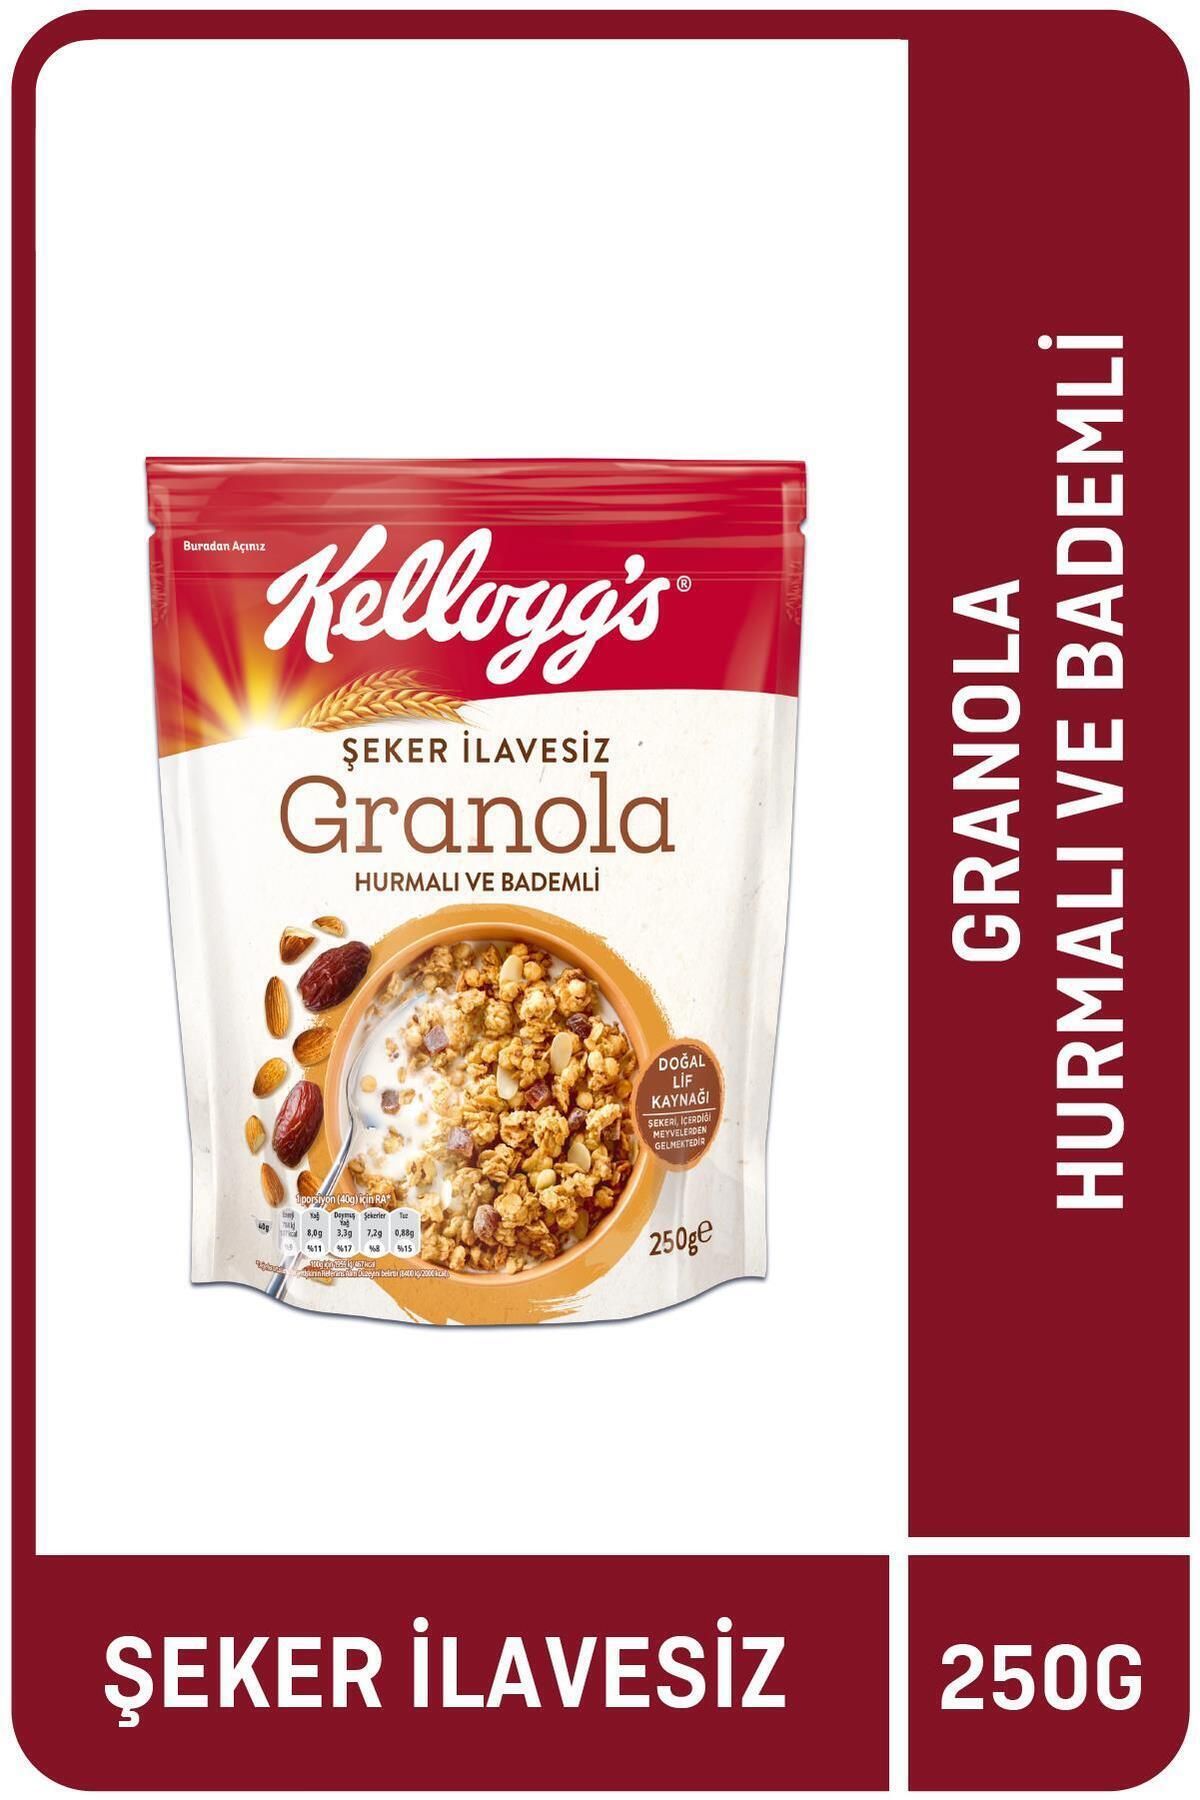 Kellogg's İlave Şekersiz Granola Hurmalı Ve Bademli 250 G ,%43 Yulaf Içerir,lif Kaynağı